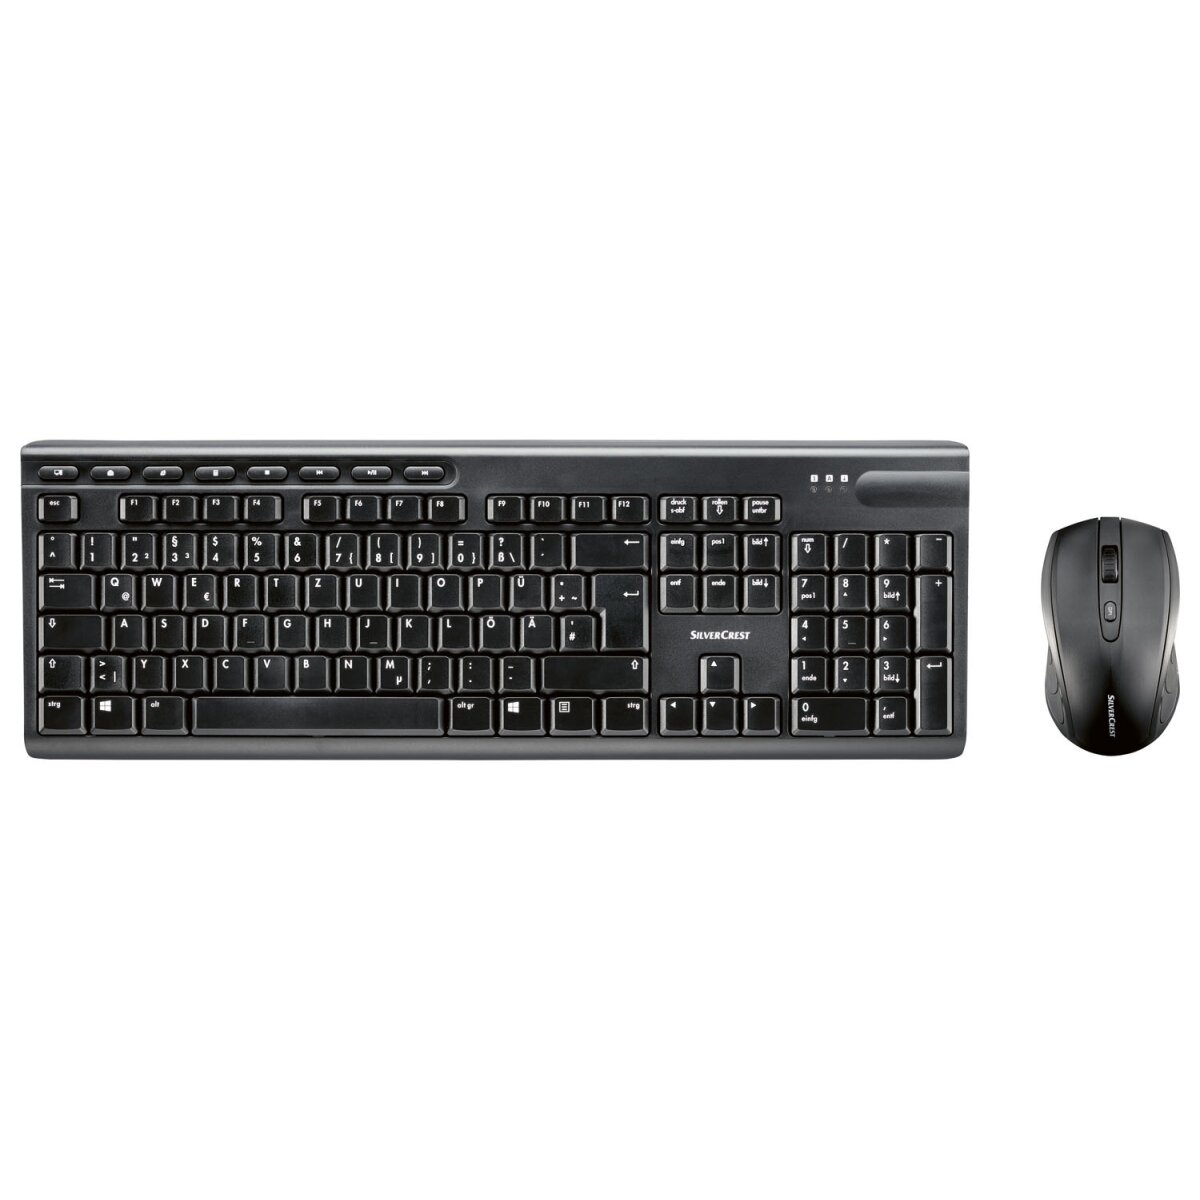 SILVERCREST® Tastatur und Maus Set, kabellos, mit USB-Nano-Empfänger -  B-Ware sehr gut, 15,99 €